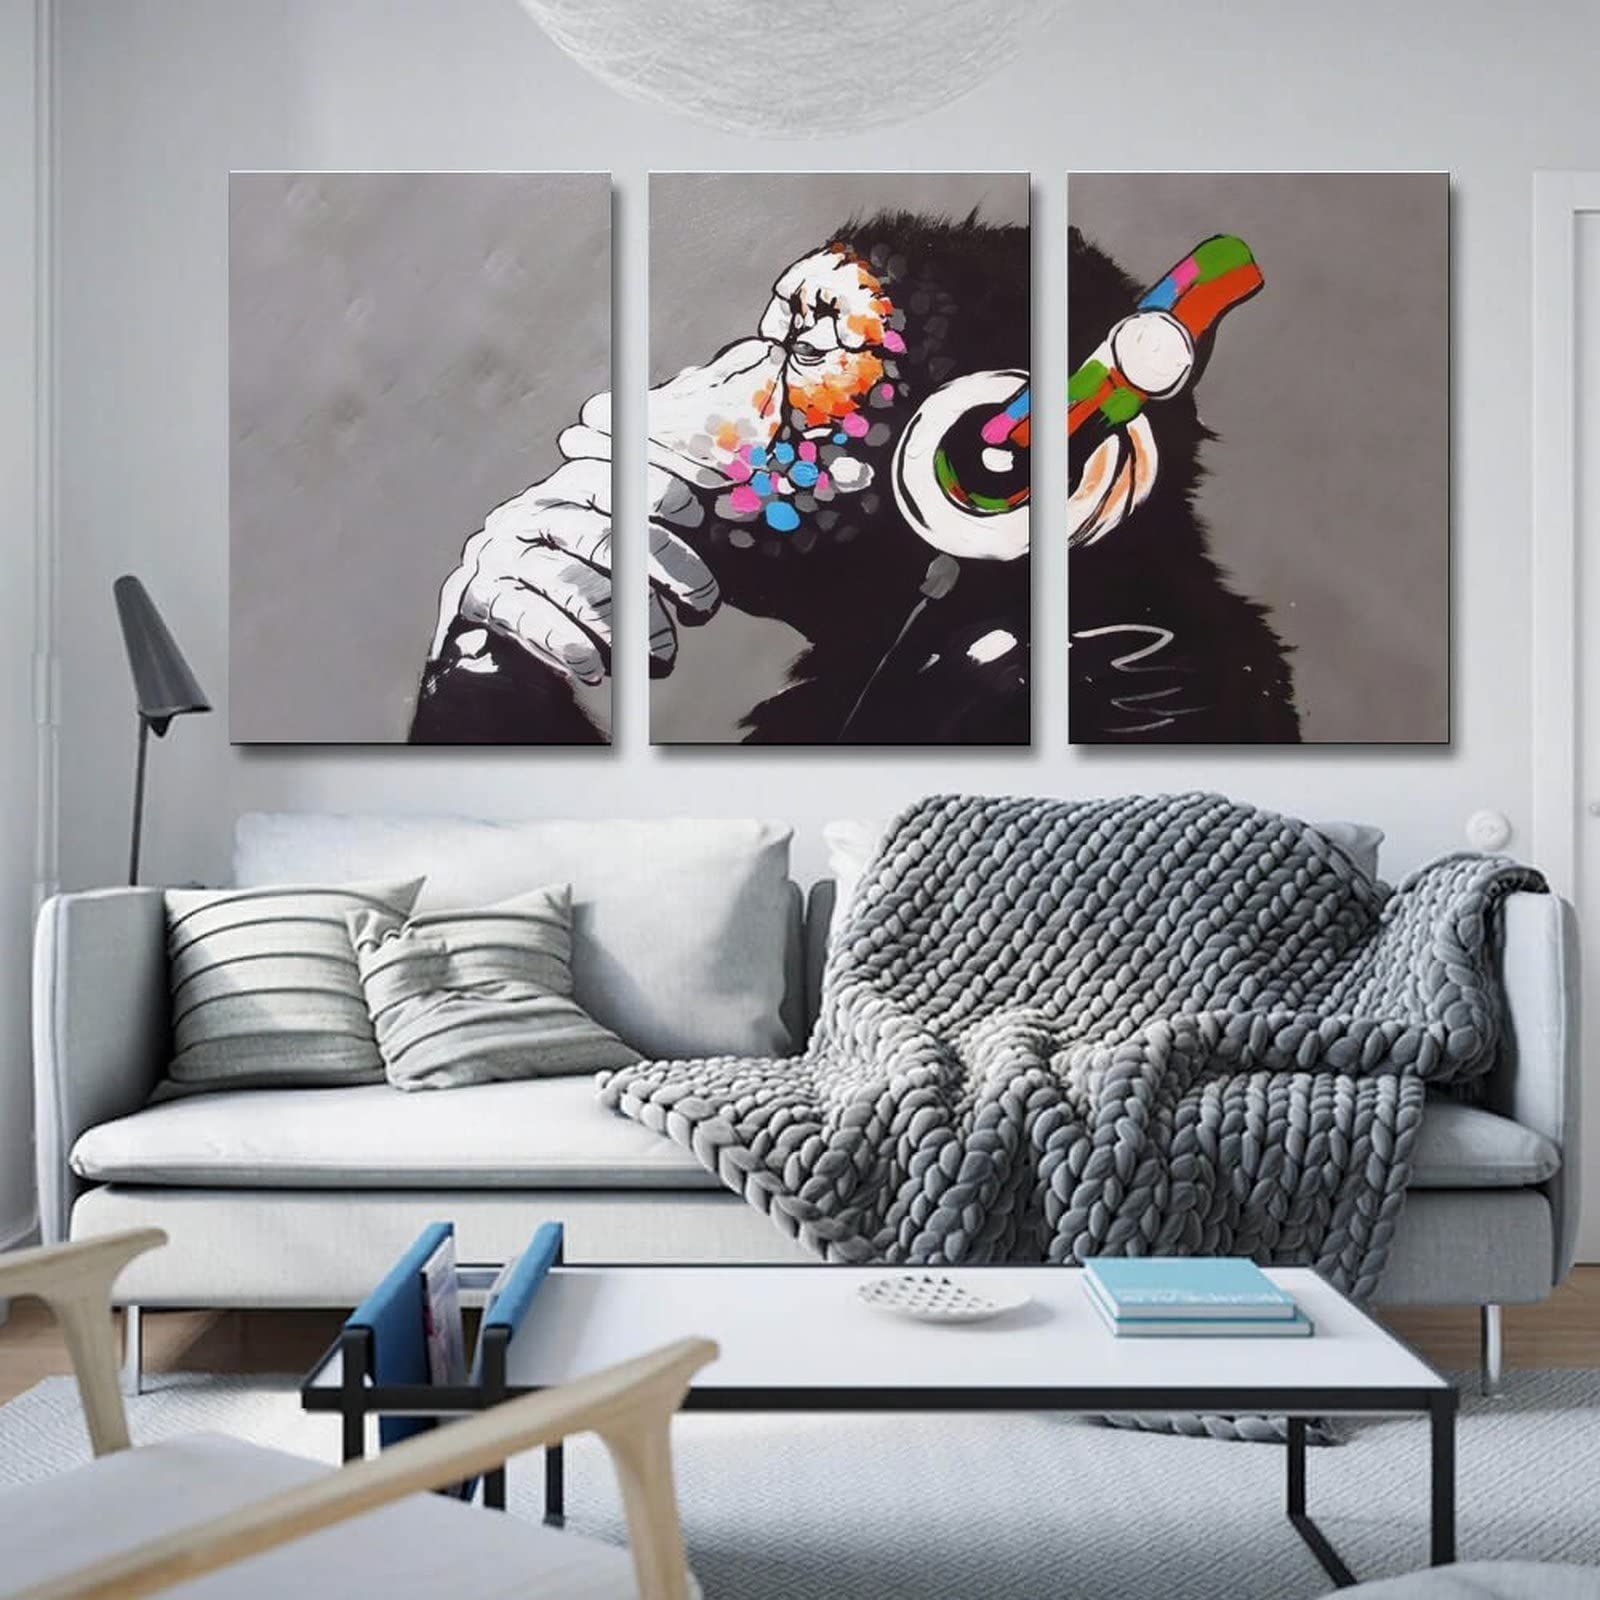 壁アート(40x60cmx3pcs) モダンアート おしゃれ 絵 インテリア 現代 壁飾り 壁アート 壁掛け フレーム装飾画 キャンバスアート  アートフレーム アートパネル チンパンジー Banksy バンクシー ポスター 音楽を聴いている猿 - メルカリ